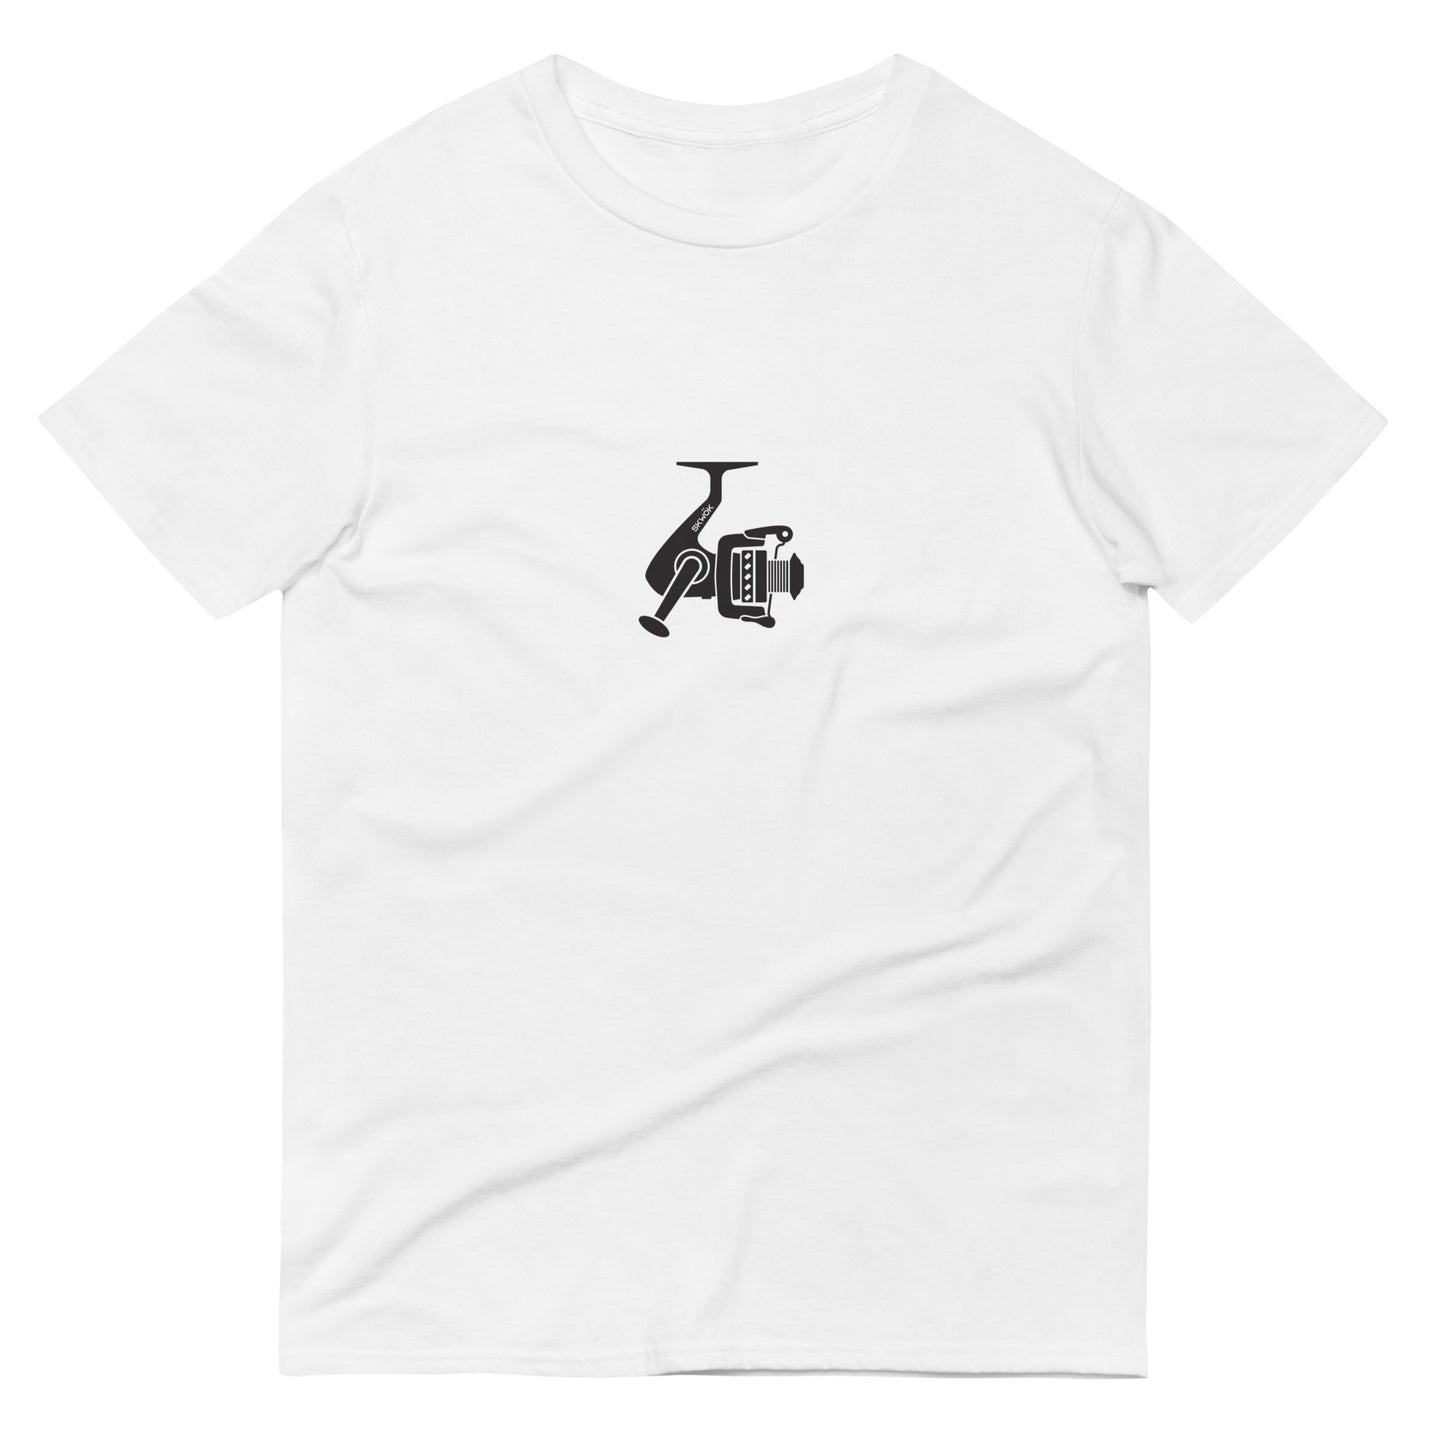 Skwok Brand / #18 / T-shirt / Spin Reel